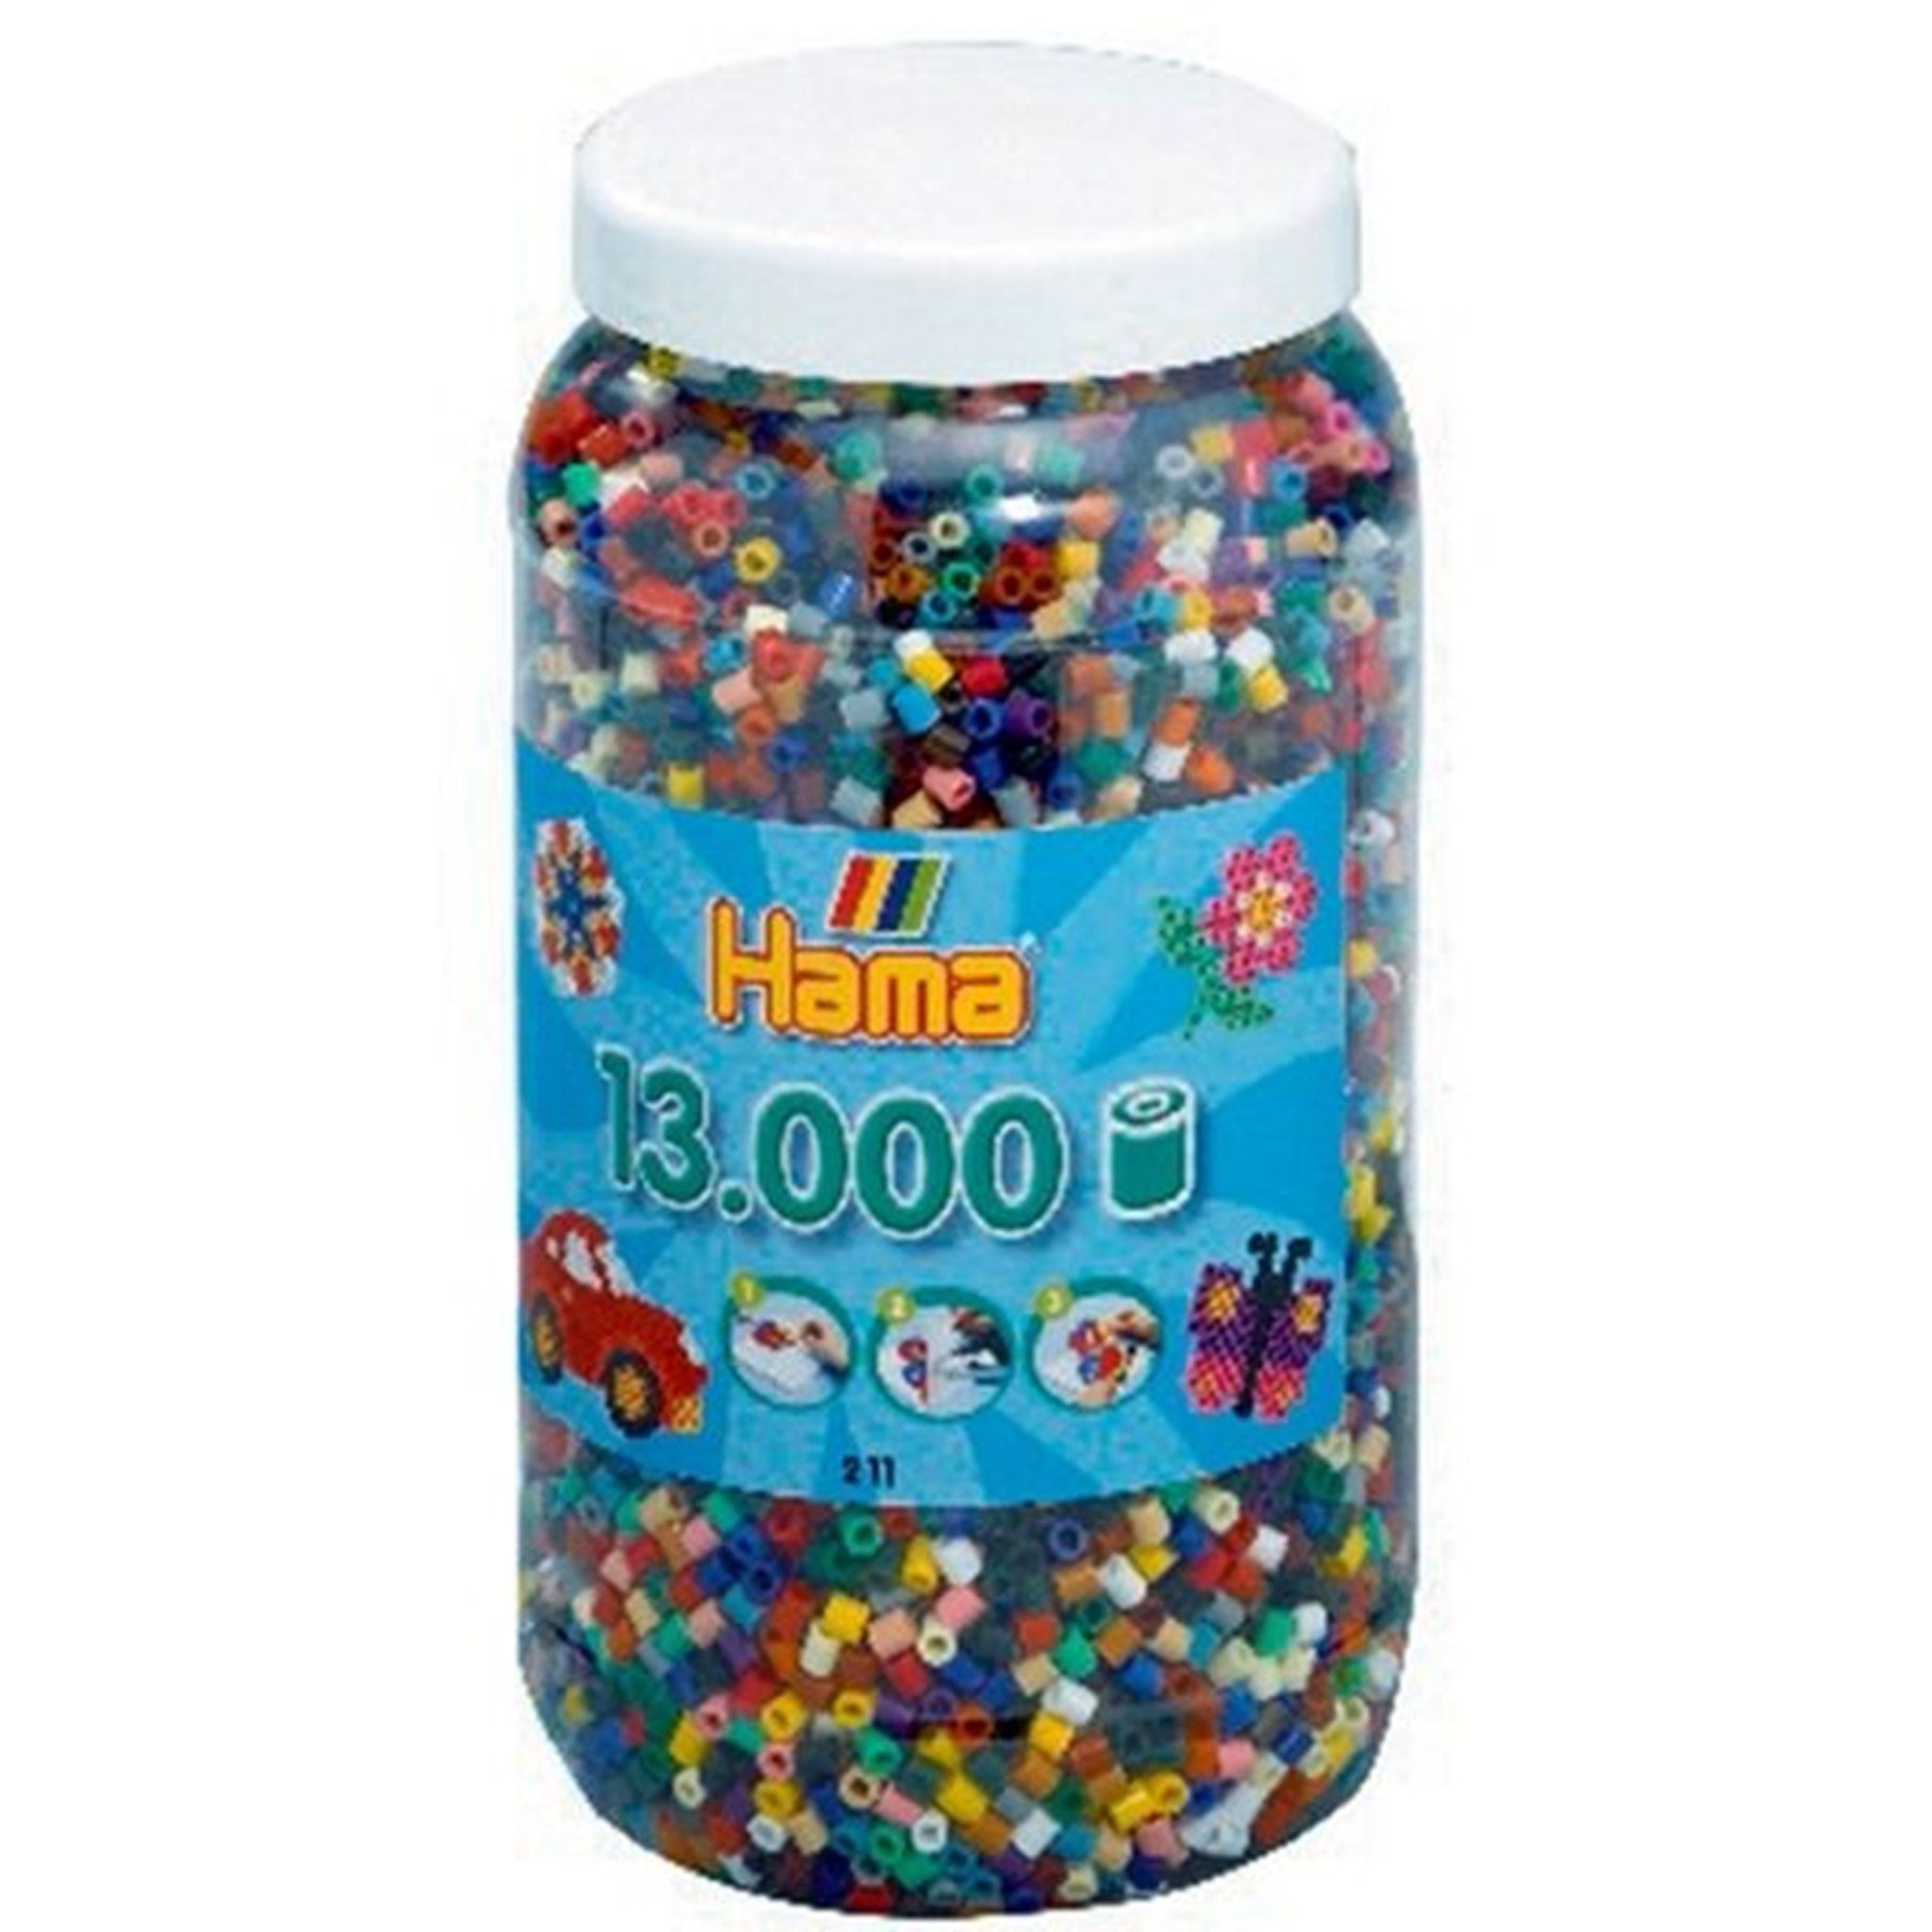 HAMA Midi Pearls 13.000 pcs Colors Mix 67